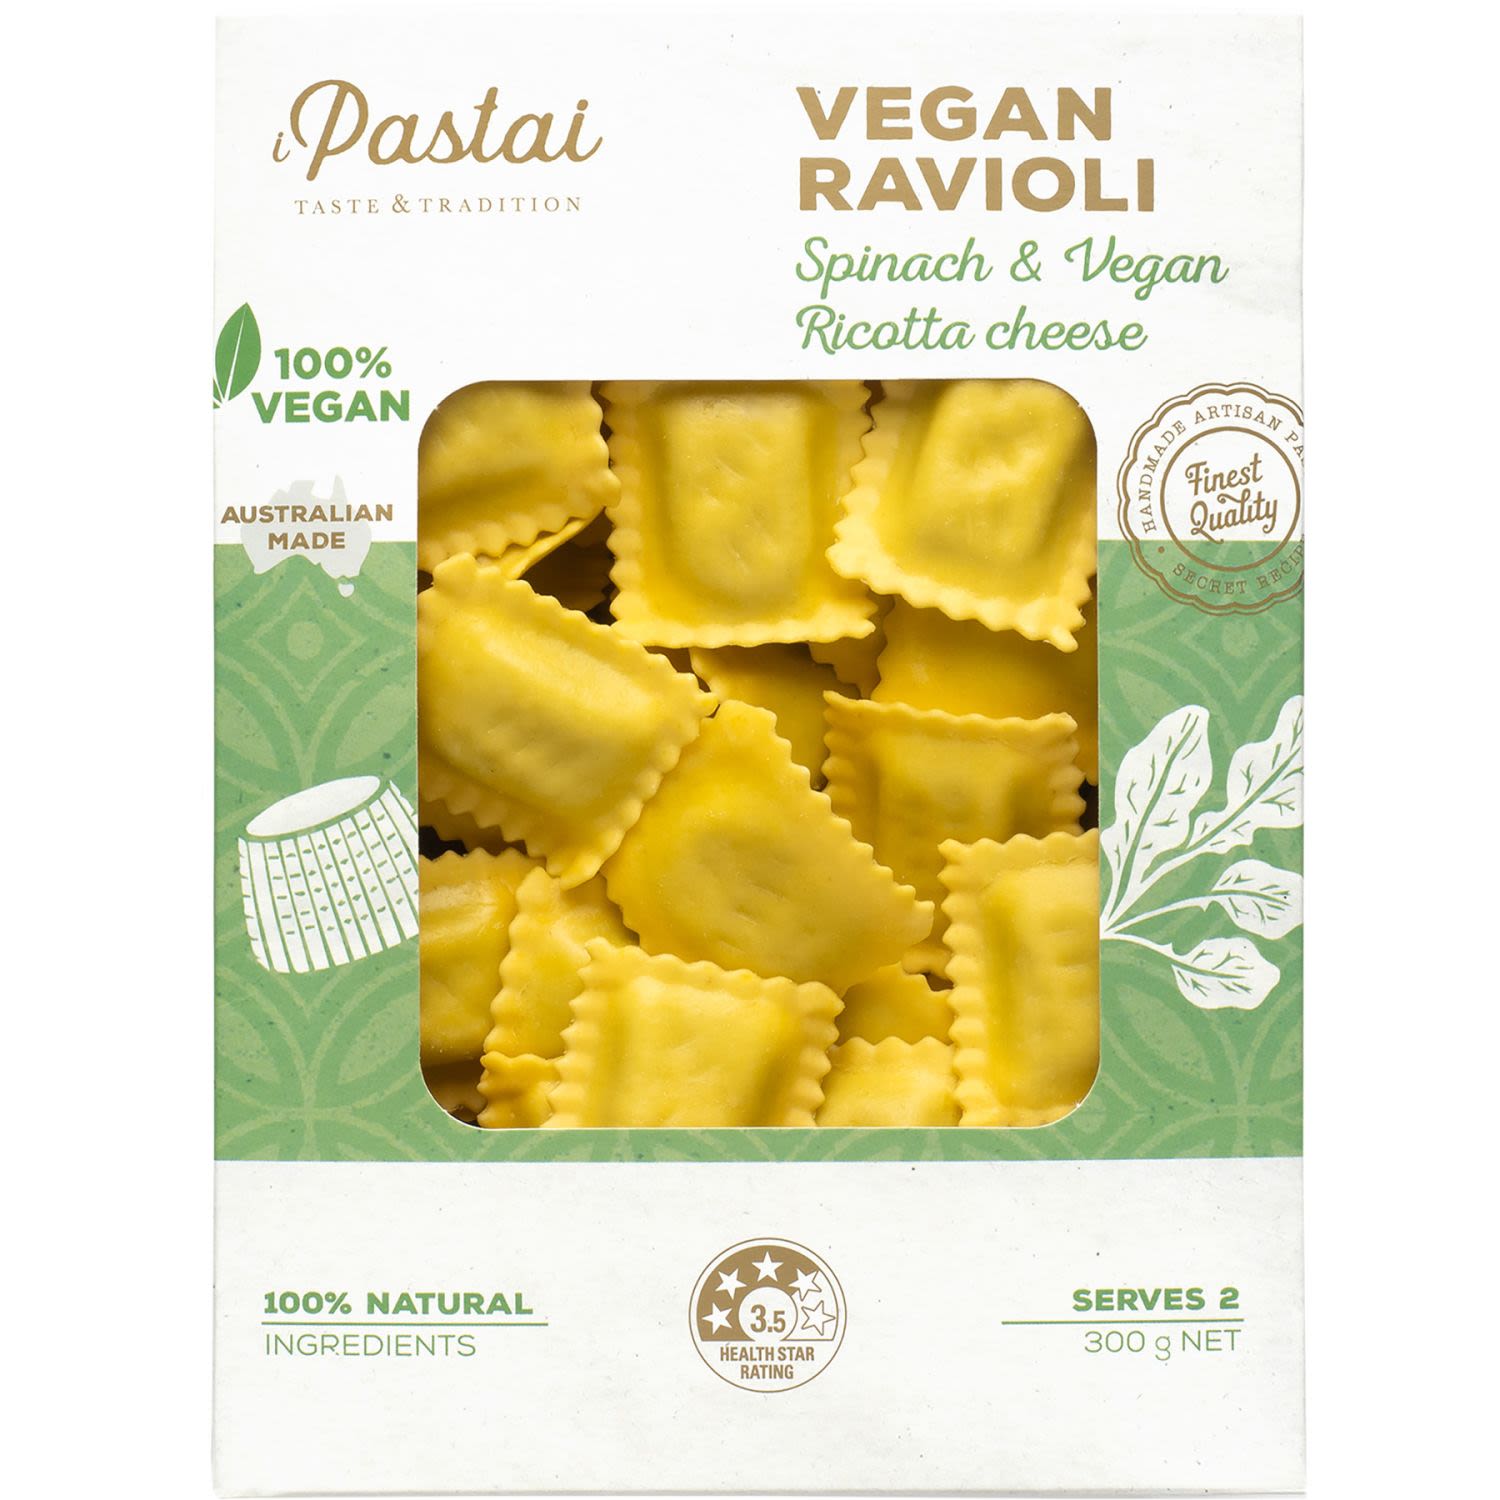 I Pastai Vegan Ravioli Spinach & Ricotta Cheese, 300 Gram